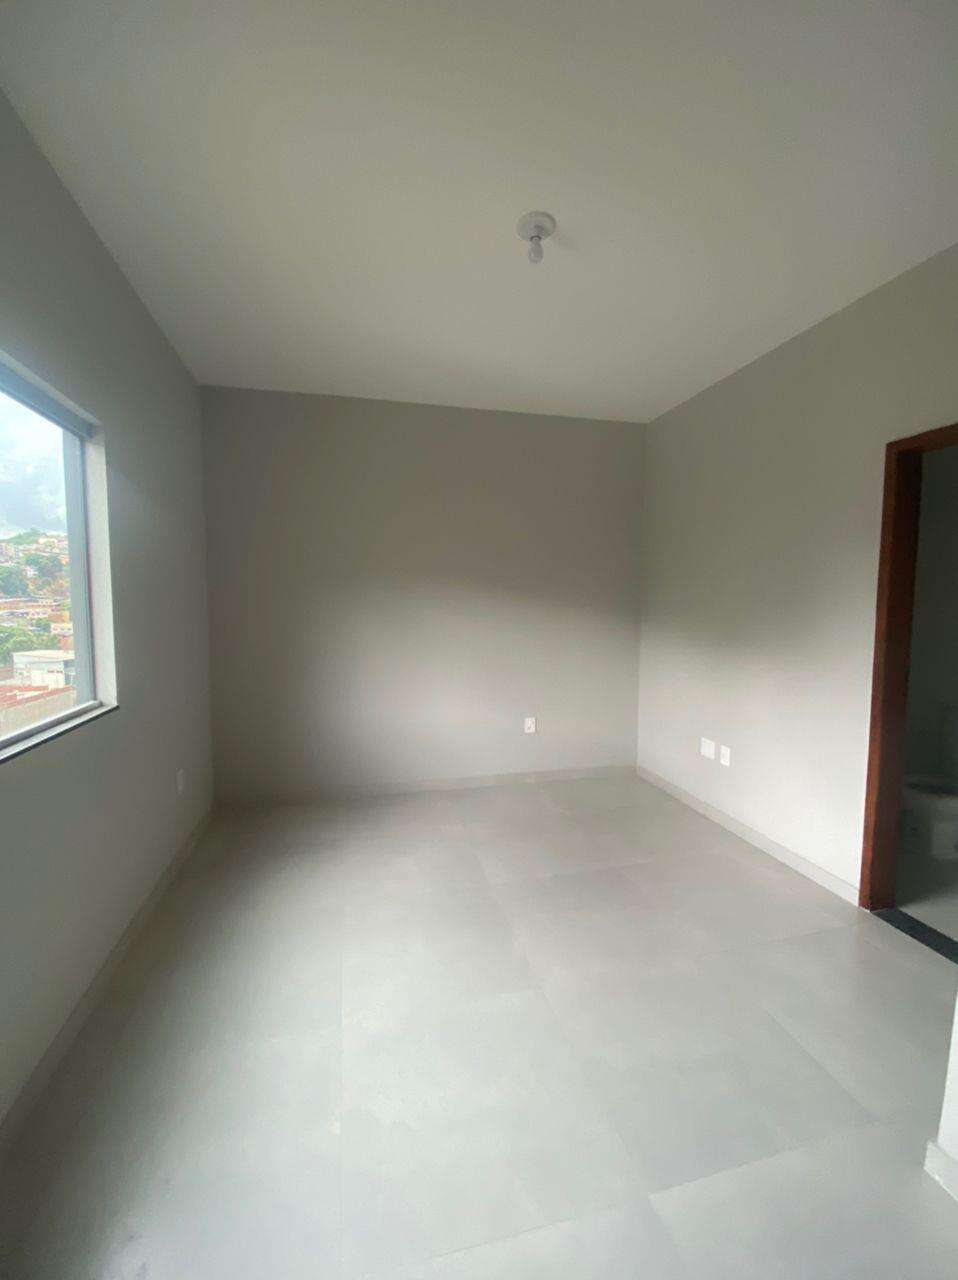 Apartamento 3 quartos para aluguel no Rafael José de Lima: 7b807b9a-8-25931da7-ffd9-410d-9013-2e05ea39351b.jpg